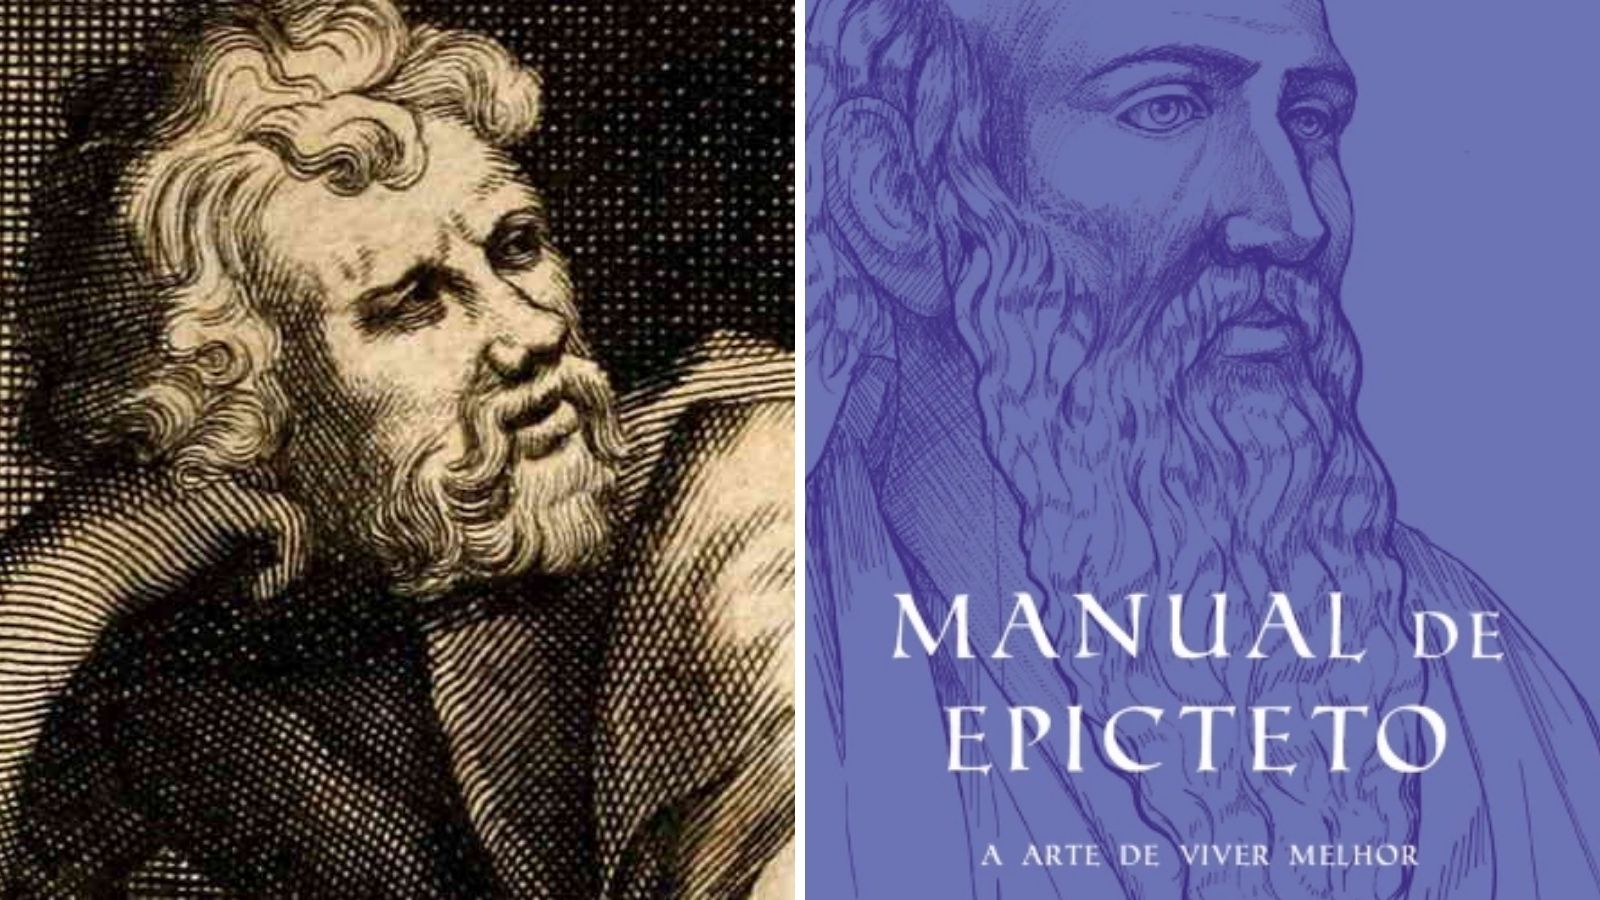 O livro Manual de Epicteto, ao lado de um retrato dele